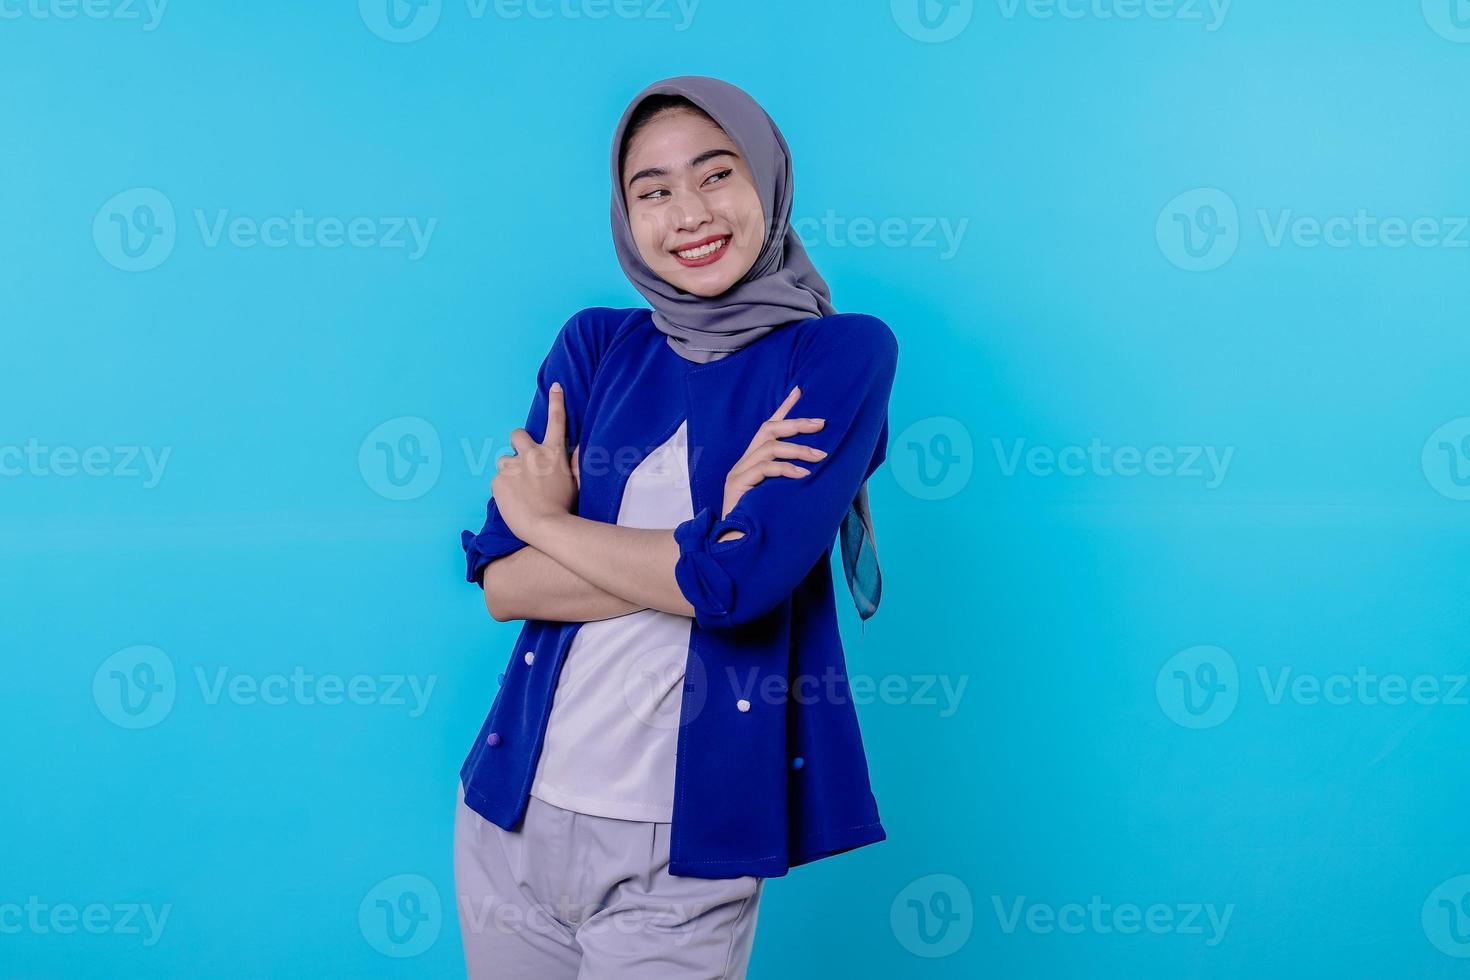 otimista encantadora jovem atraente com um sorriso fofo e alegre com um belo sorriso branco sobre fundo azul claro foto